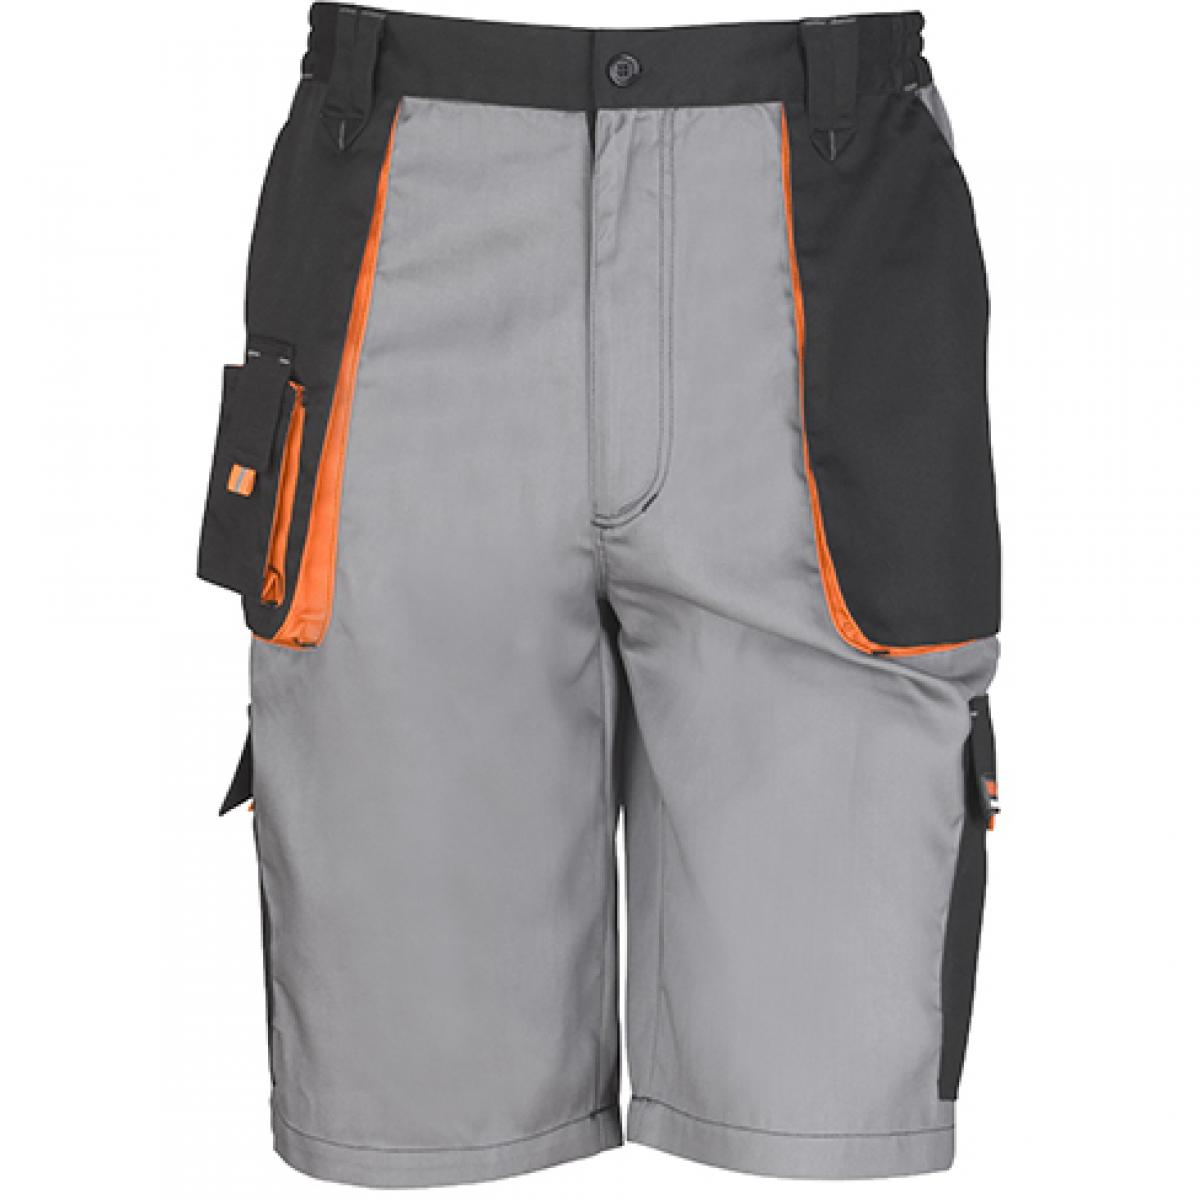 Hersteller: Result WORK-GUARD Herstellernummer: R319X Artikelbezeichnung: Herren Work-Guard Lite Shorts Farbe: Grey/Black/Orange